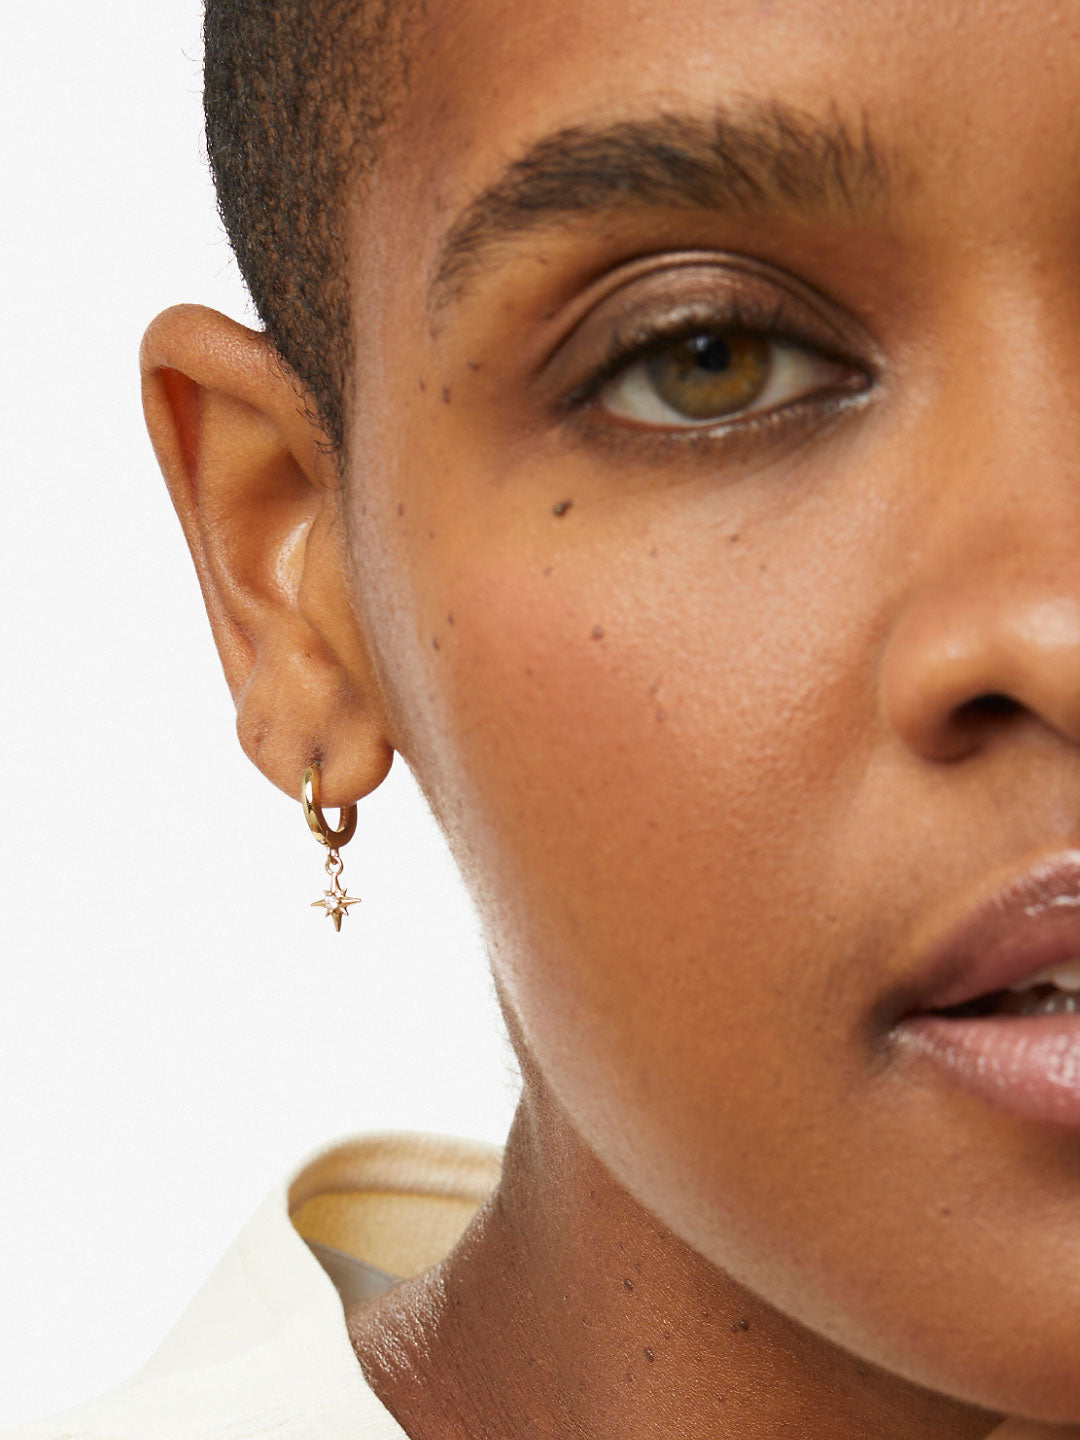 Ana Luisa Jewelry Earrings Hoop Earrings Star Hoop Earrings Oshi Gold